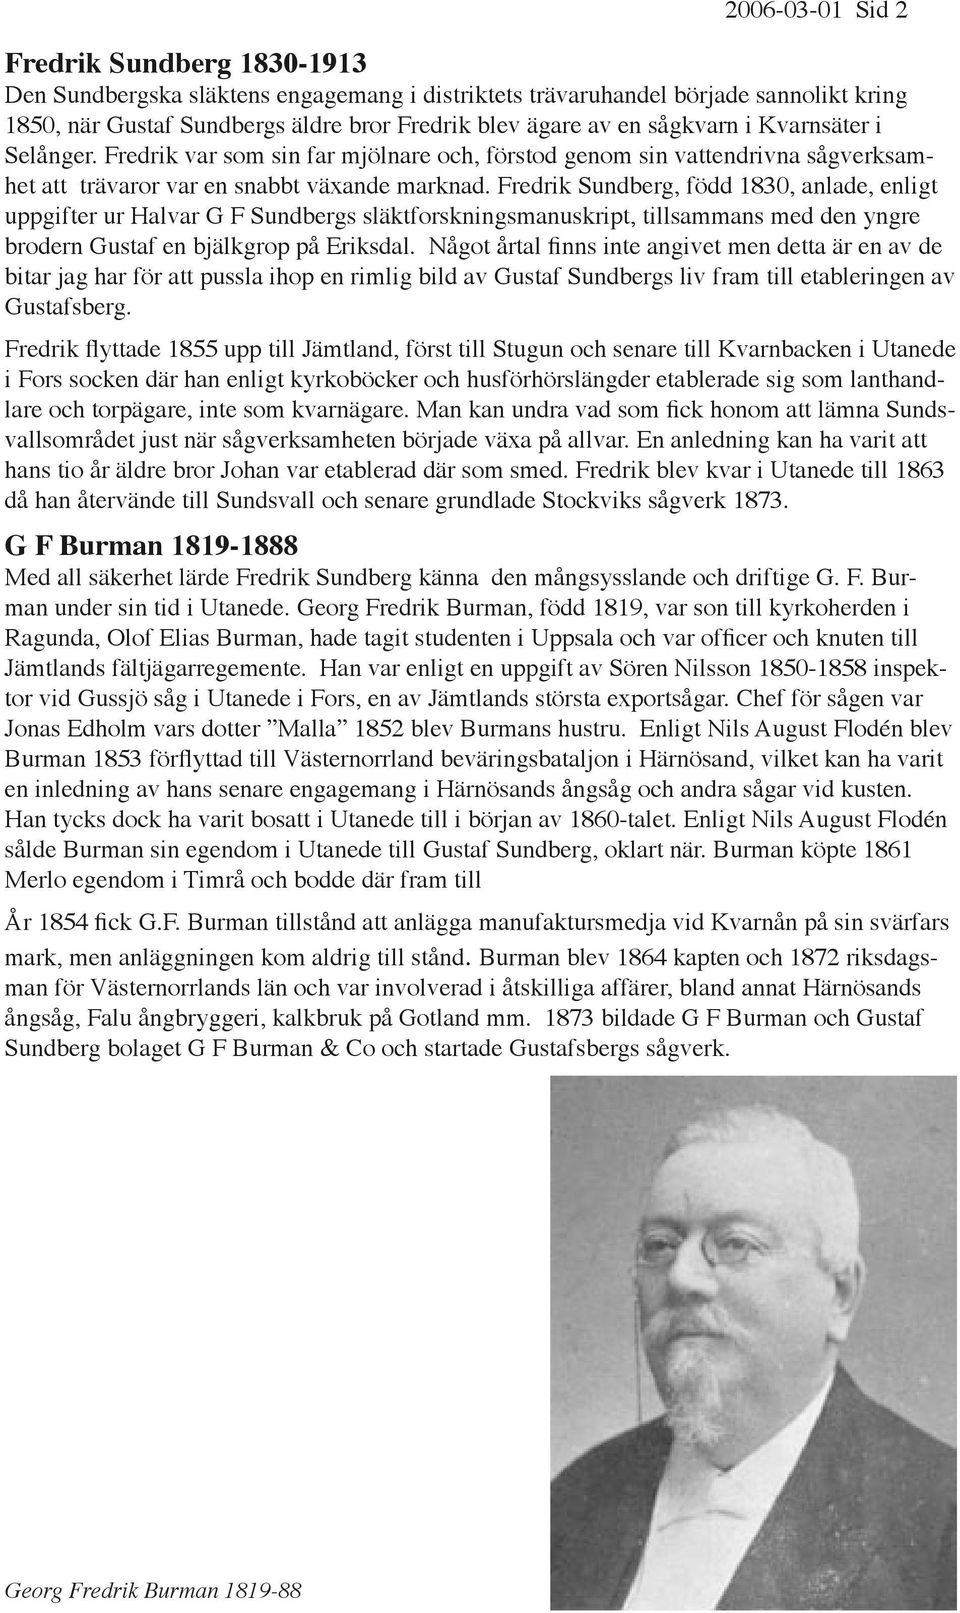 Fredrik Sundberg, född 1830, anlade, enligt uppgifter ur Halvar G F Sundbergs släktforskningsmanuskript, tillsammans med den yngre brodern Gustaf en bjälkgrop på Eriksdal.